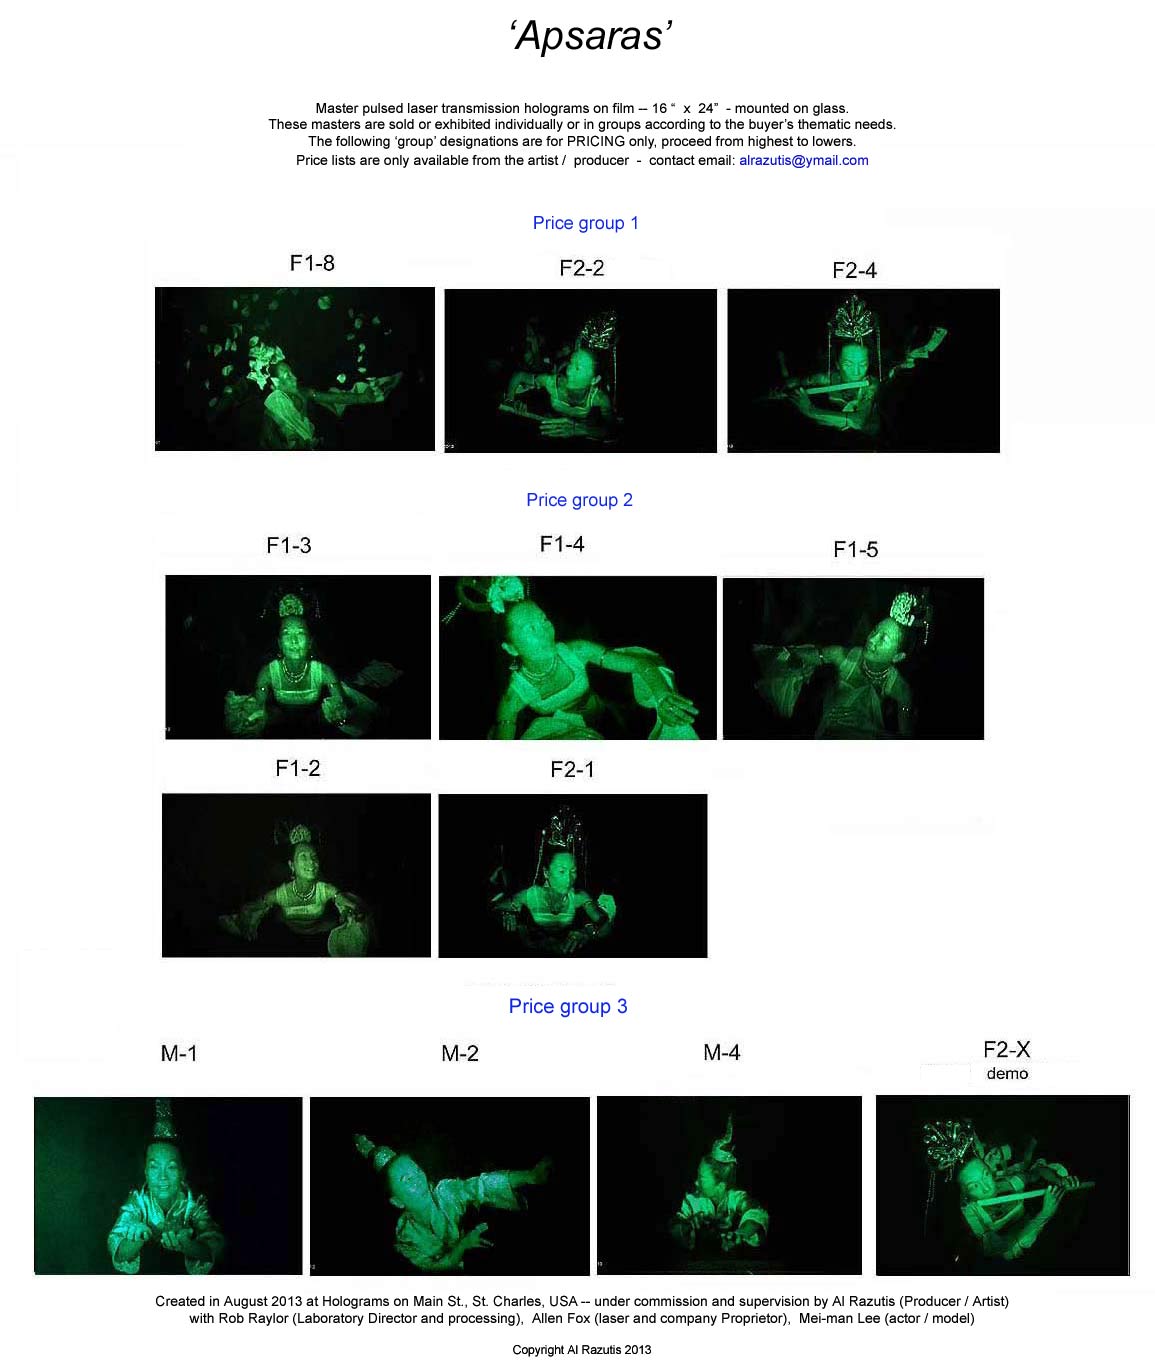 enlarged image - Apsaras by Al Razutis 2013 pulsed laser master transmission holograms